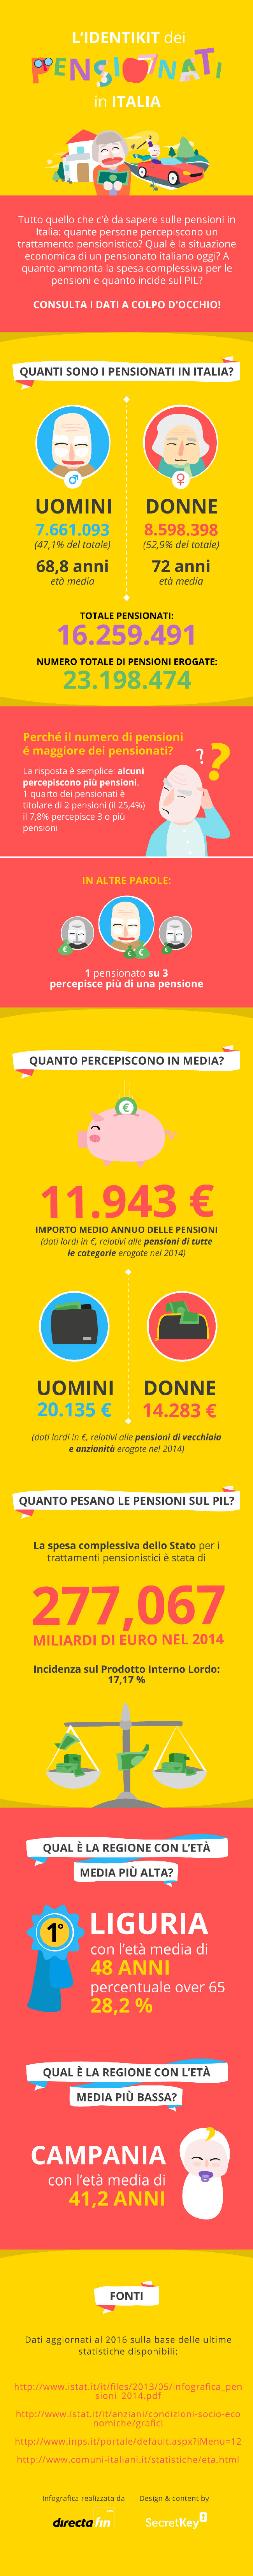 Infografica pensioni e pensionati in italia